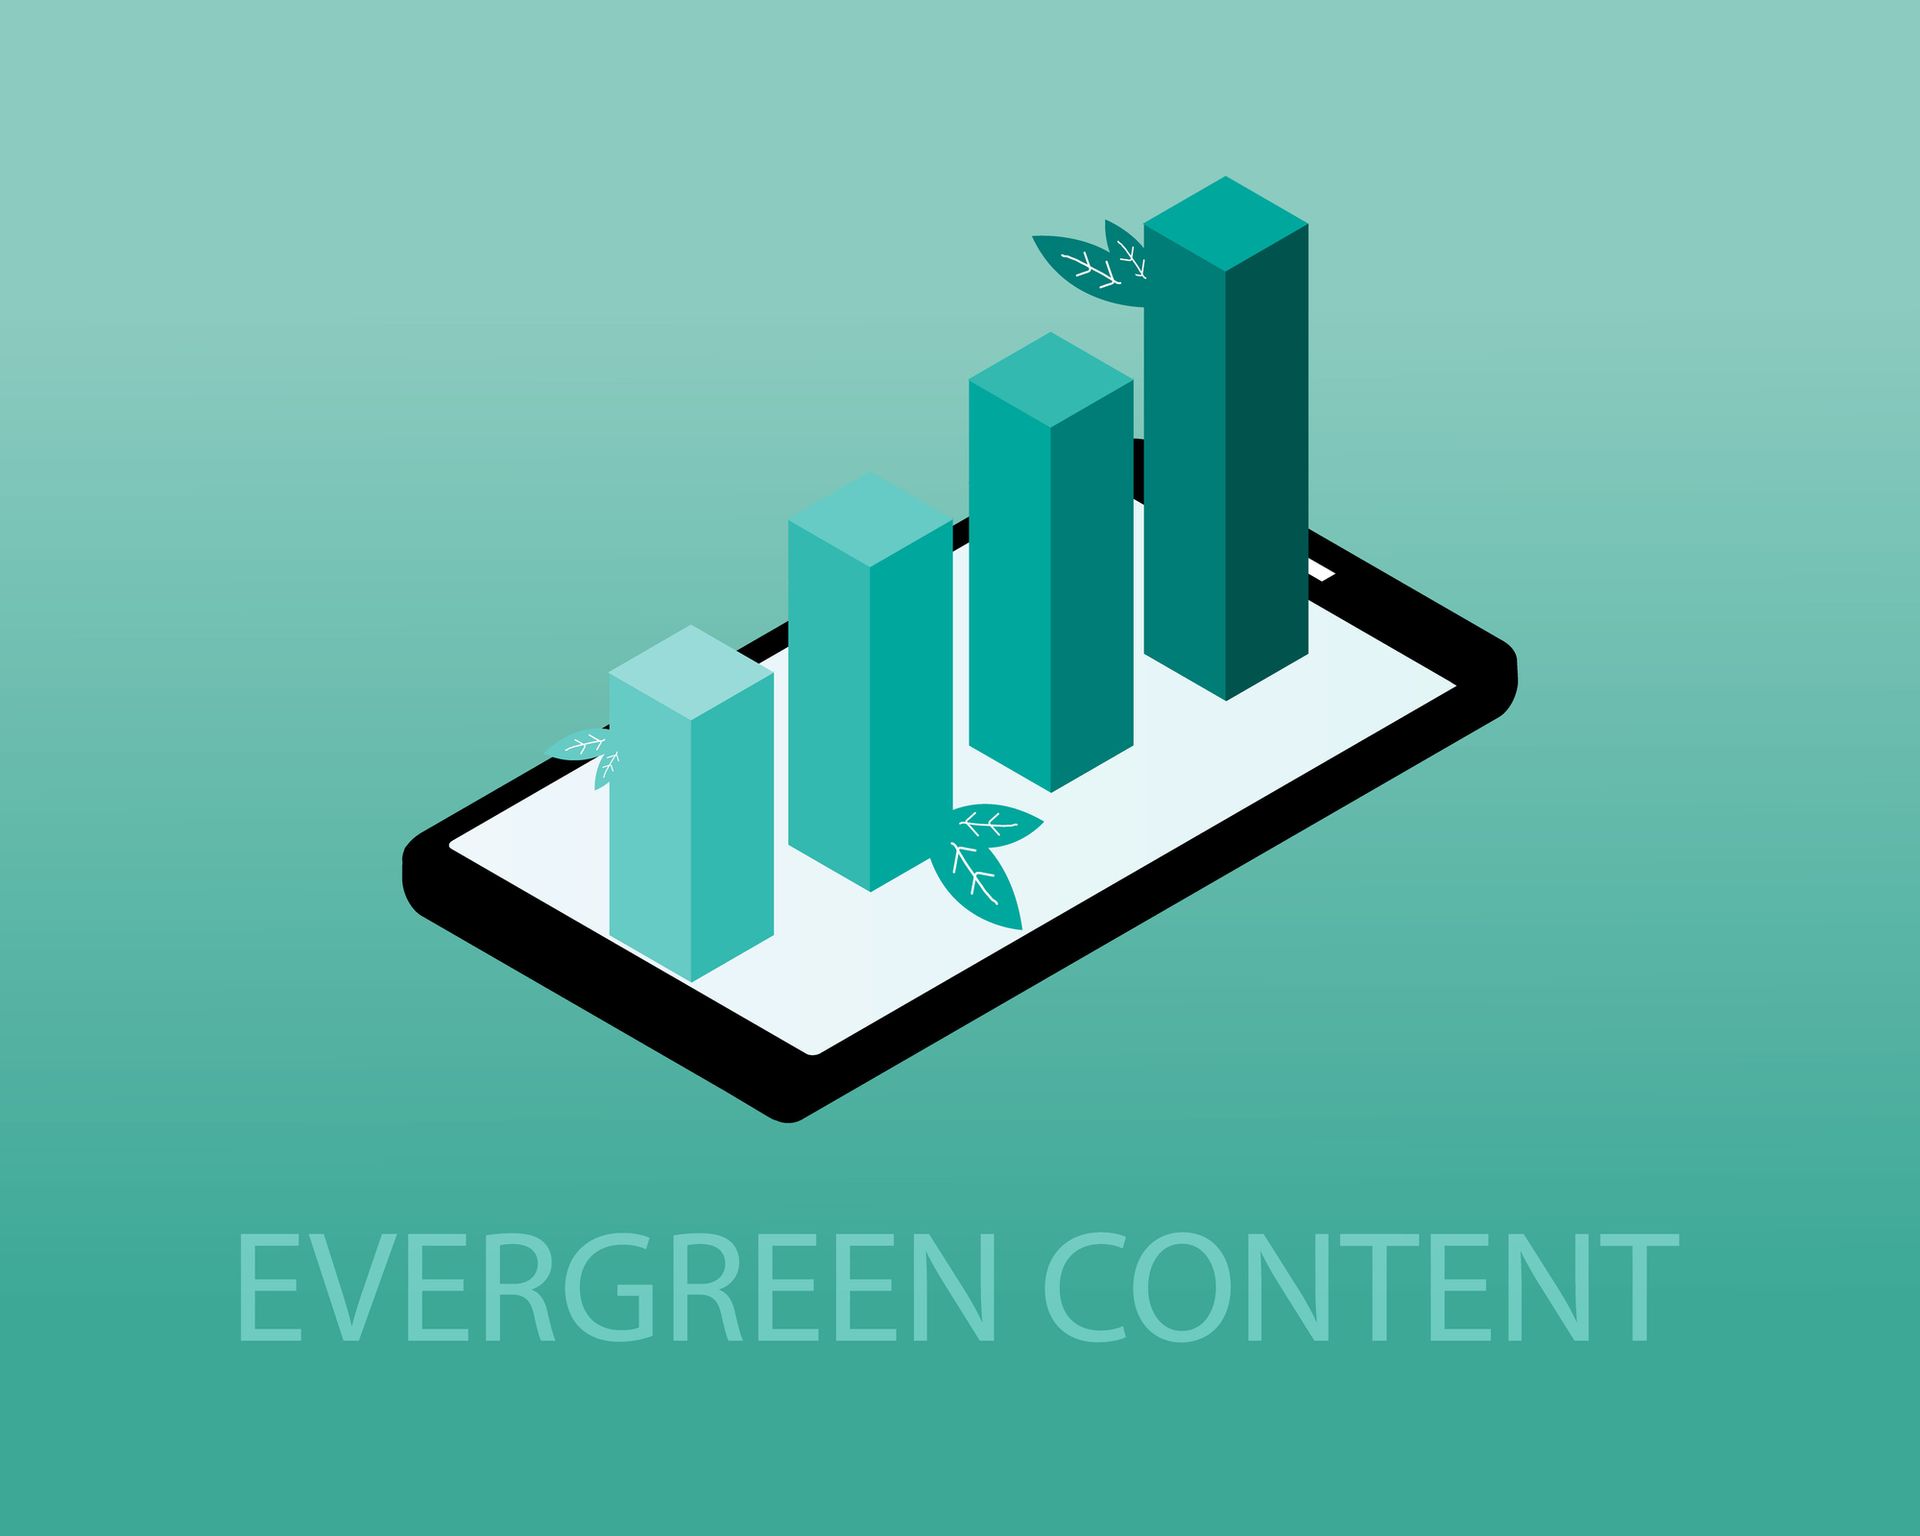 Illustratie van vier groen gekleurde grafiekstaven waaruit groene blaadjes groeien die op het scherm van een mobiele telefoon staan, ter illustratie van een blogpost over evergreen content. 